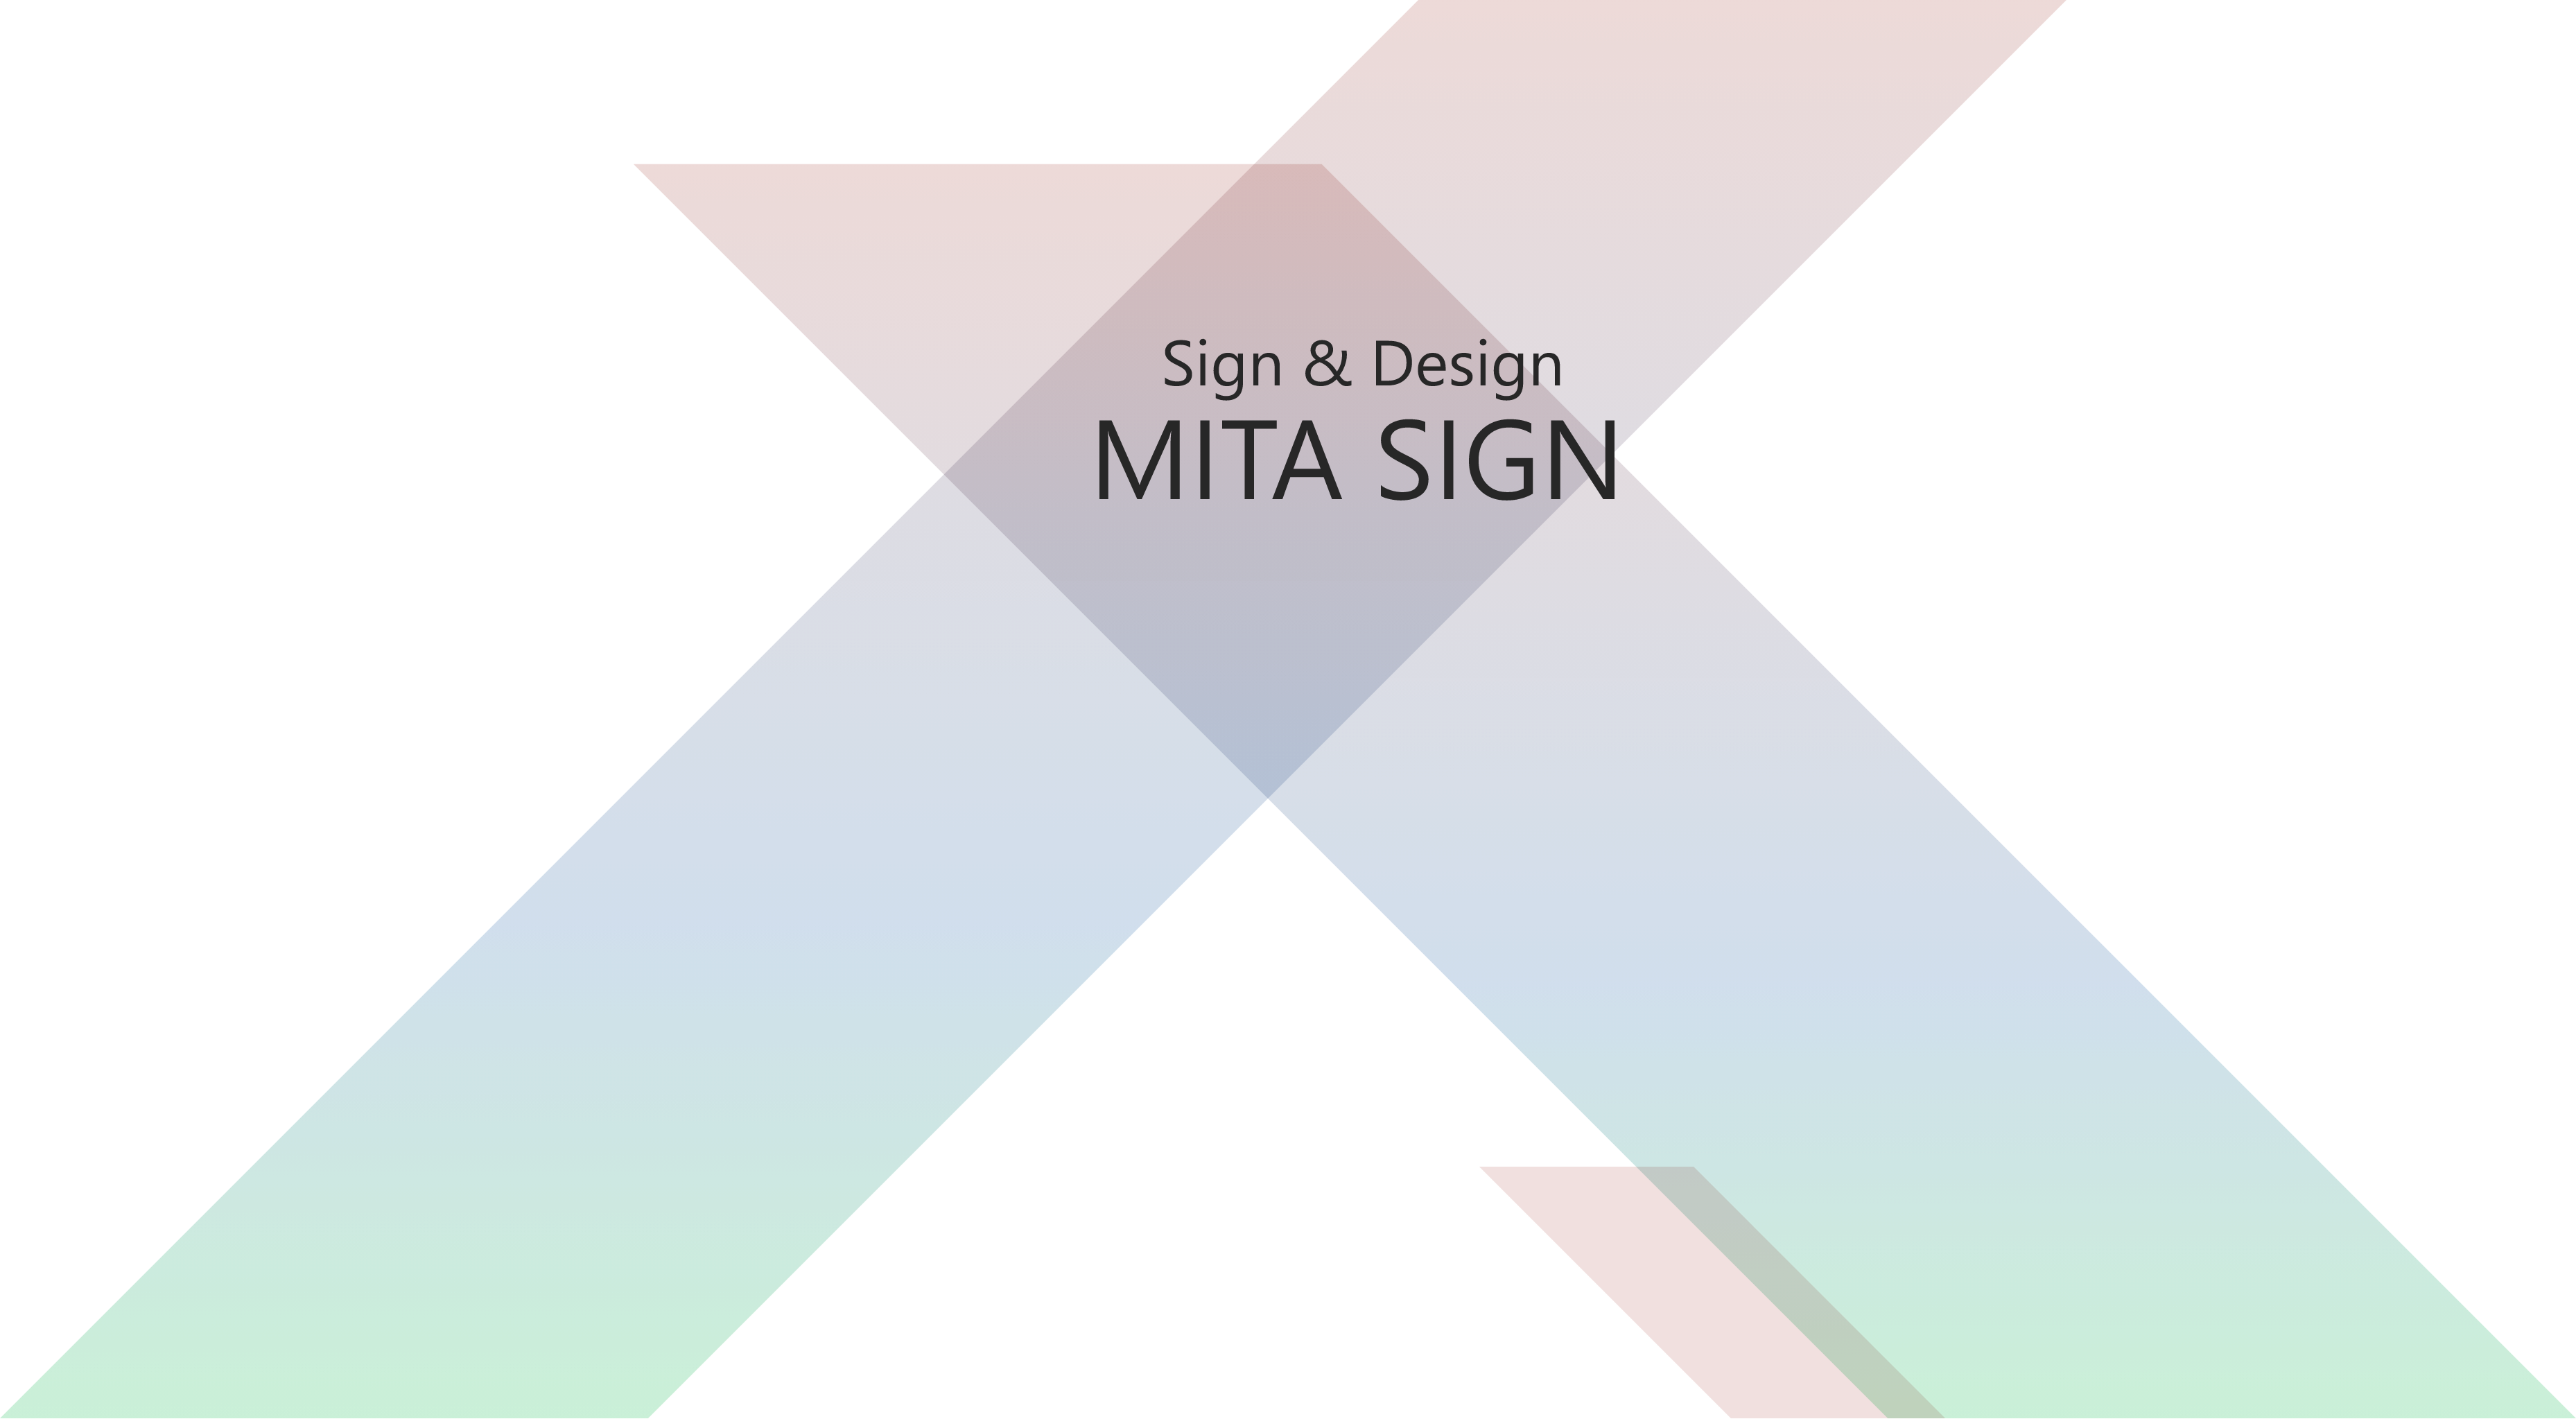 Sign & Design MITA SIGN